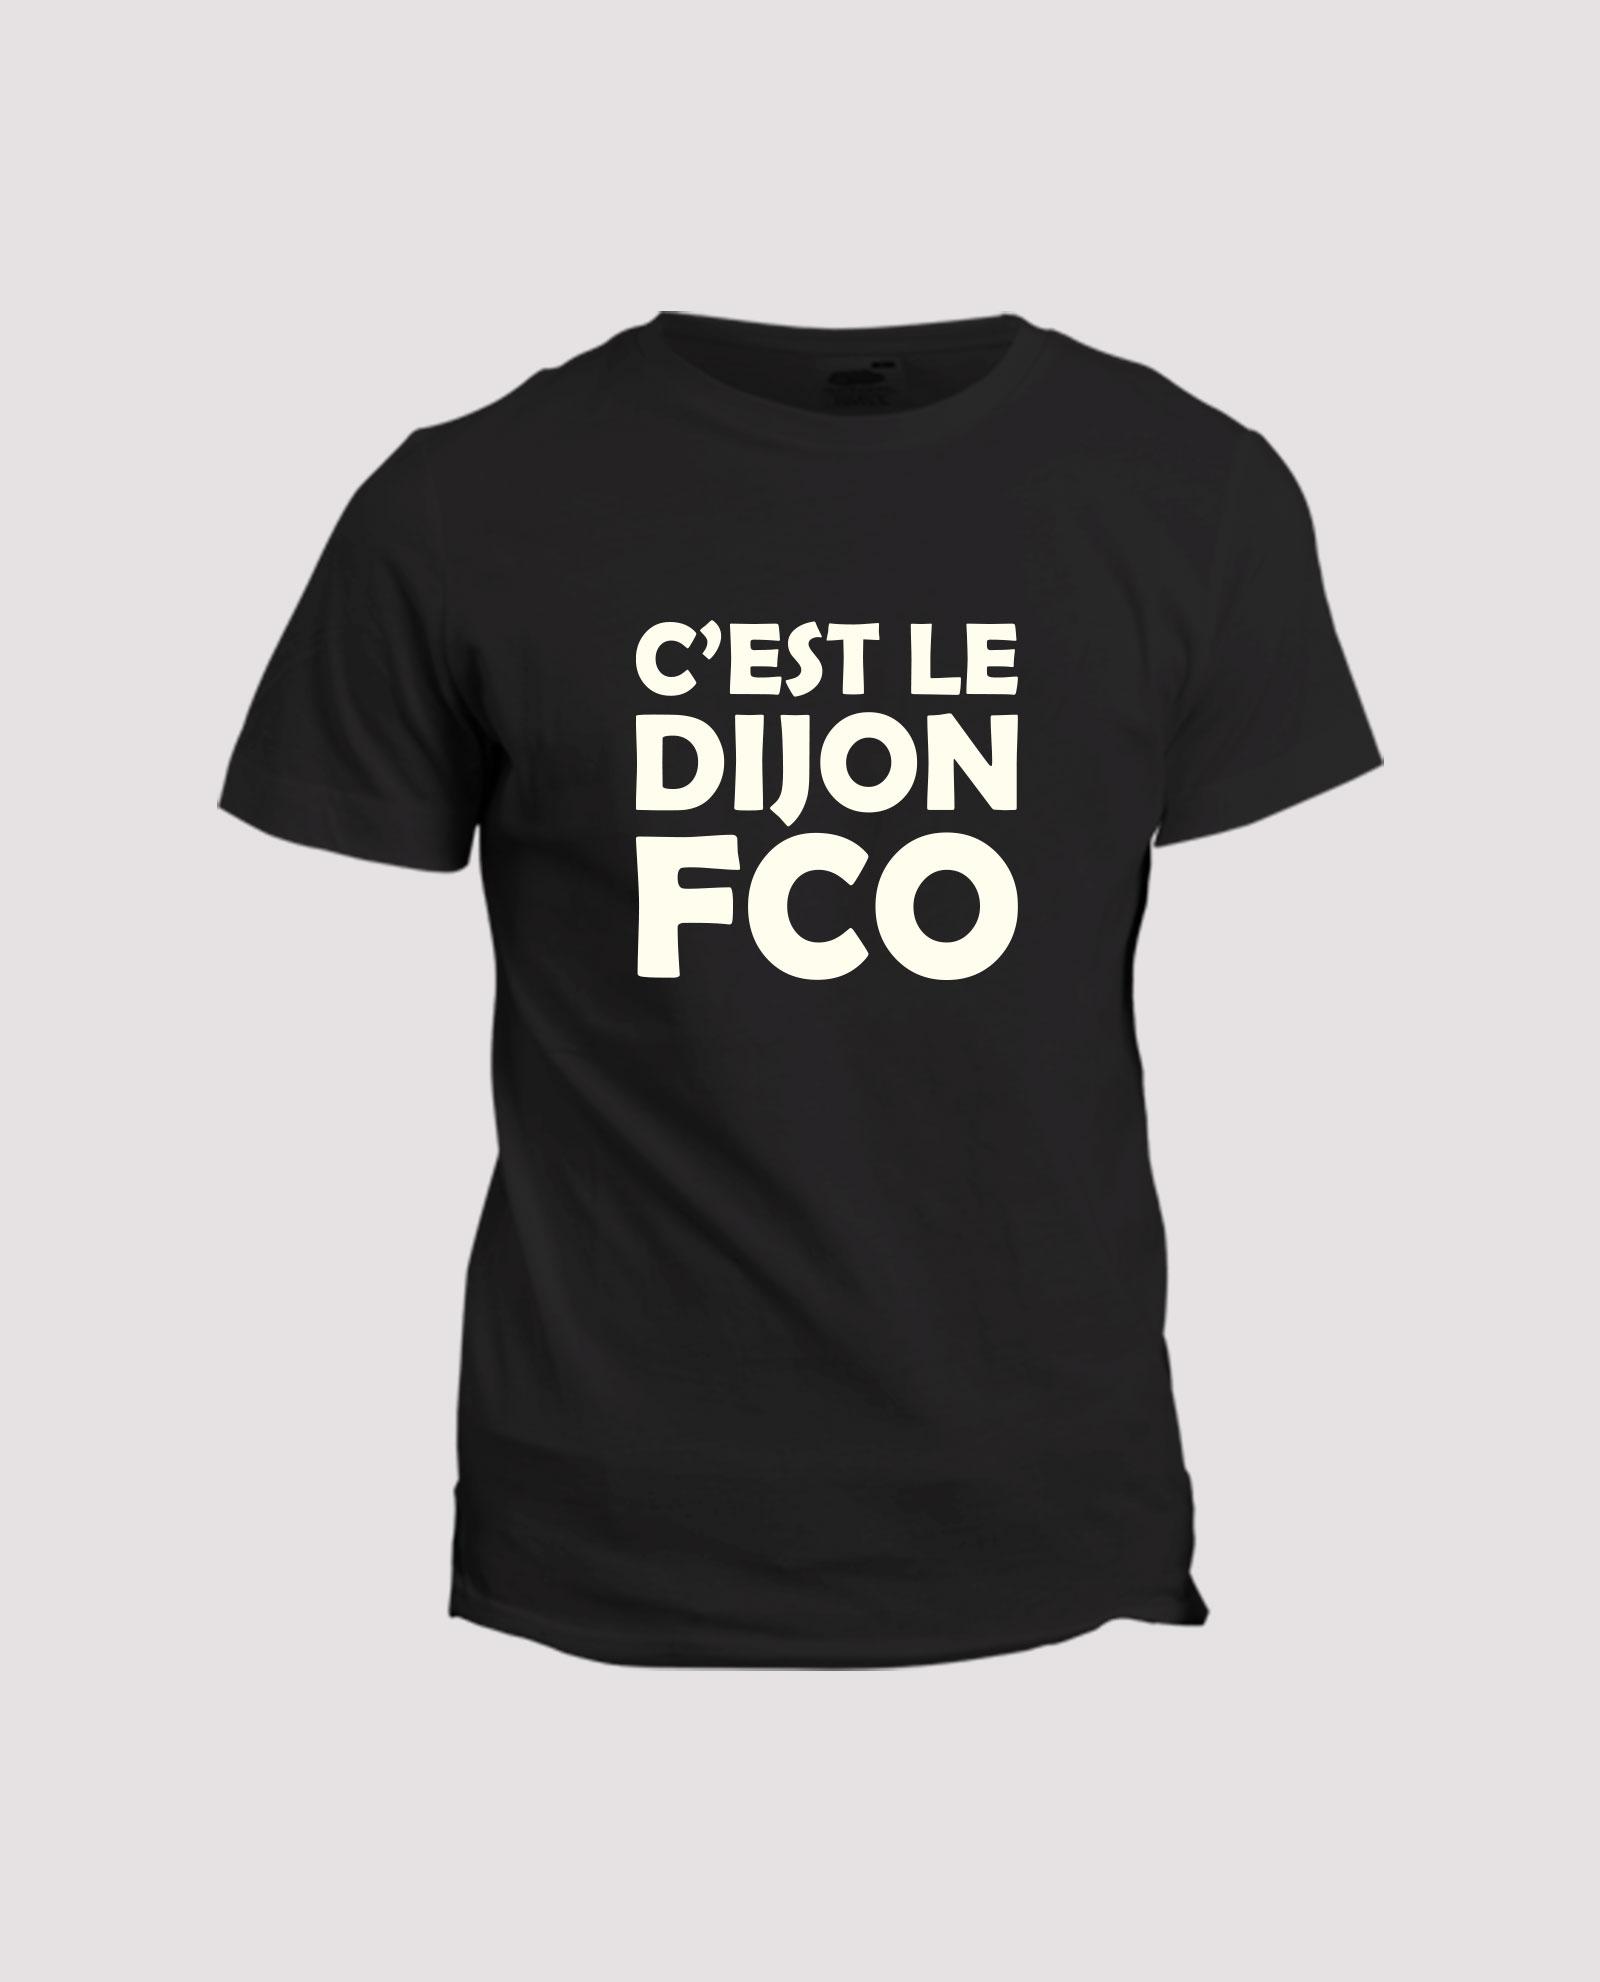 la-ligne-shop-t-shirt-noir-chant-supporter-club-football-dijon-c-est-le-dijon-fco